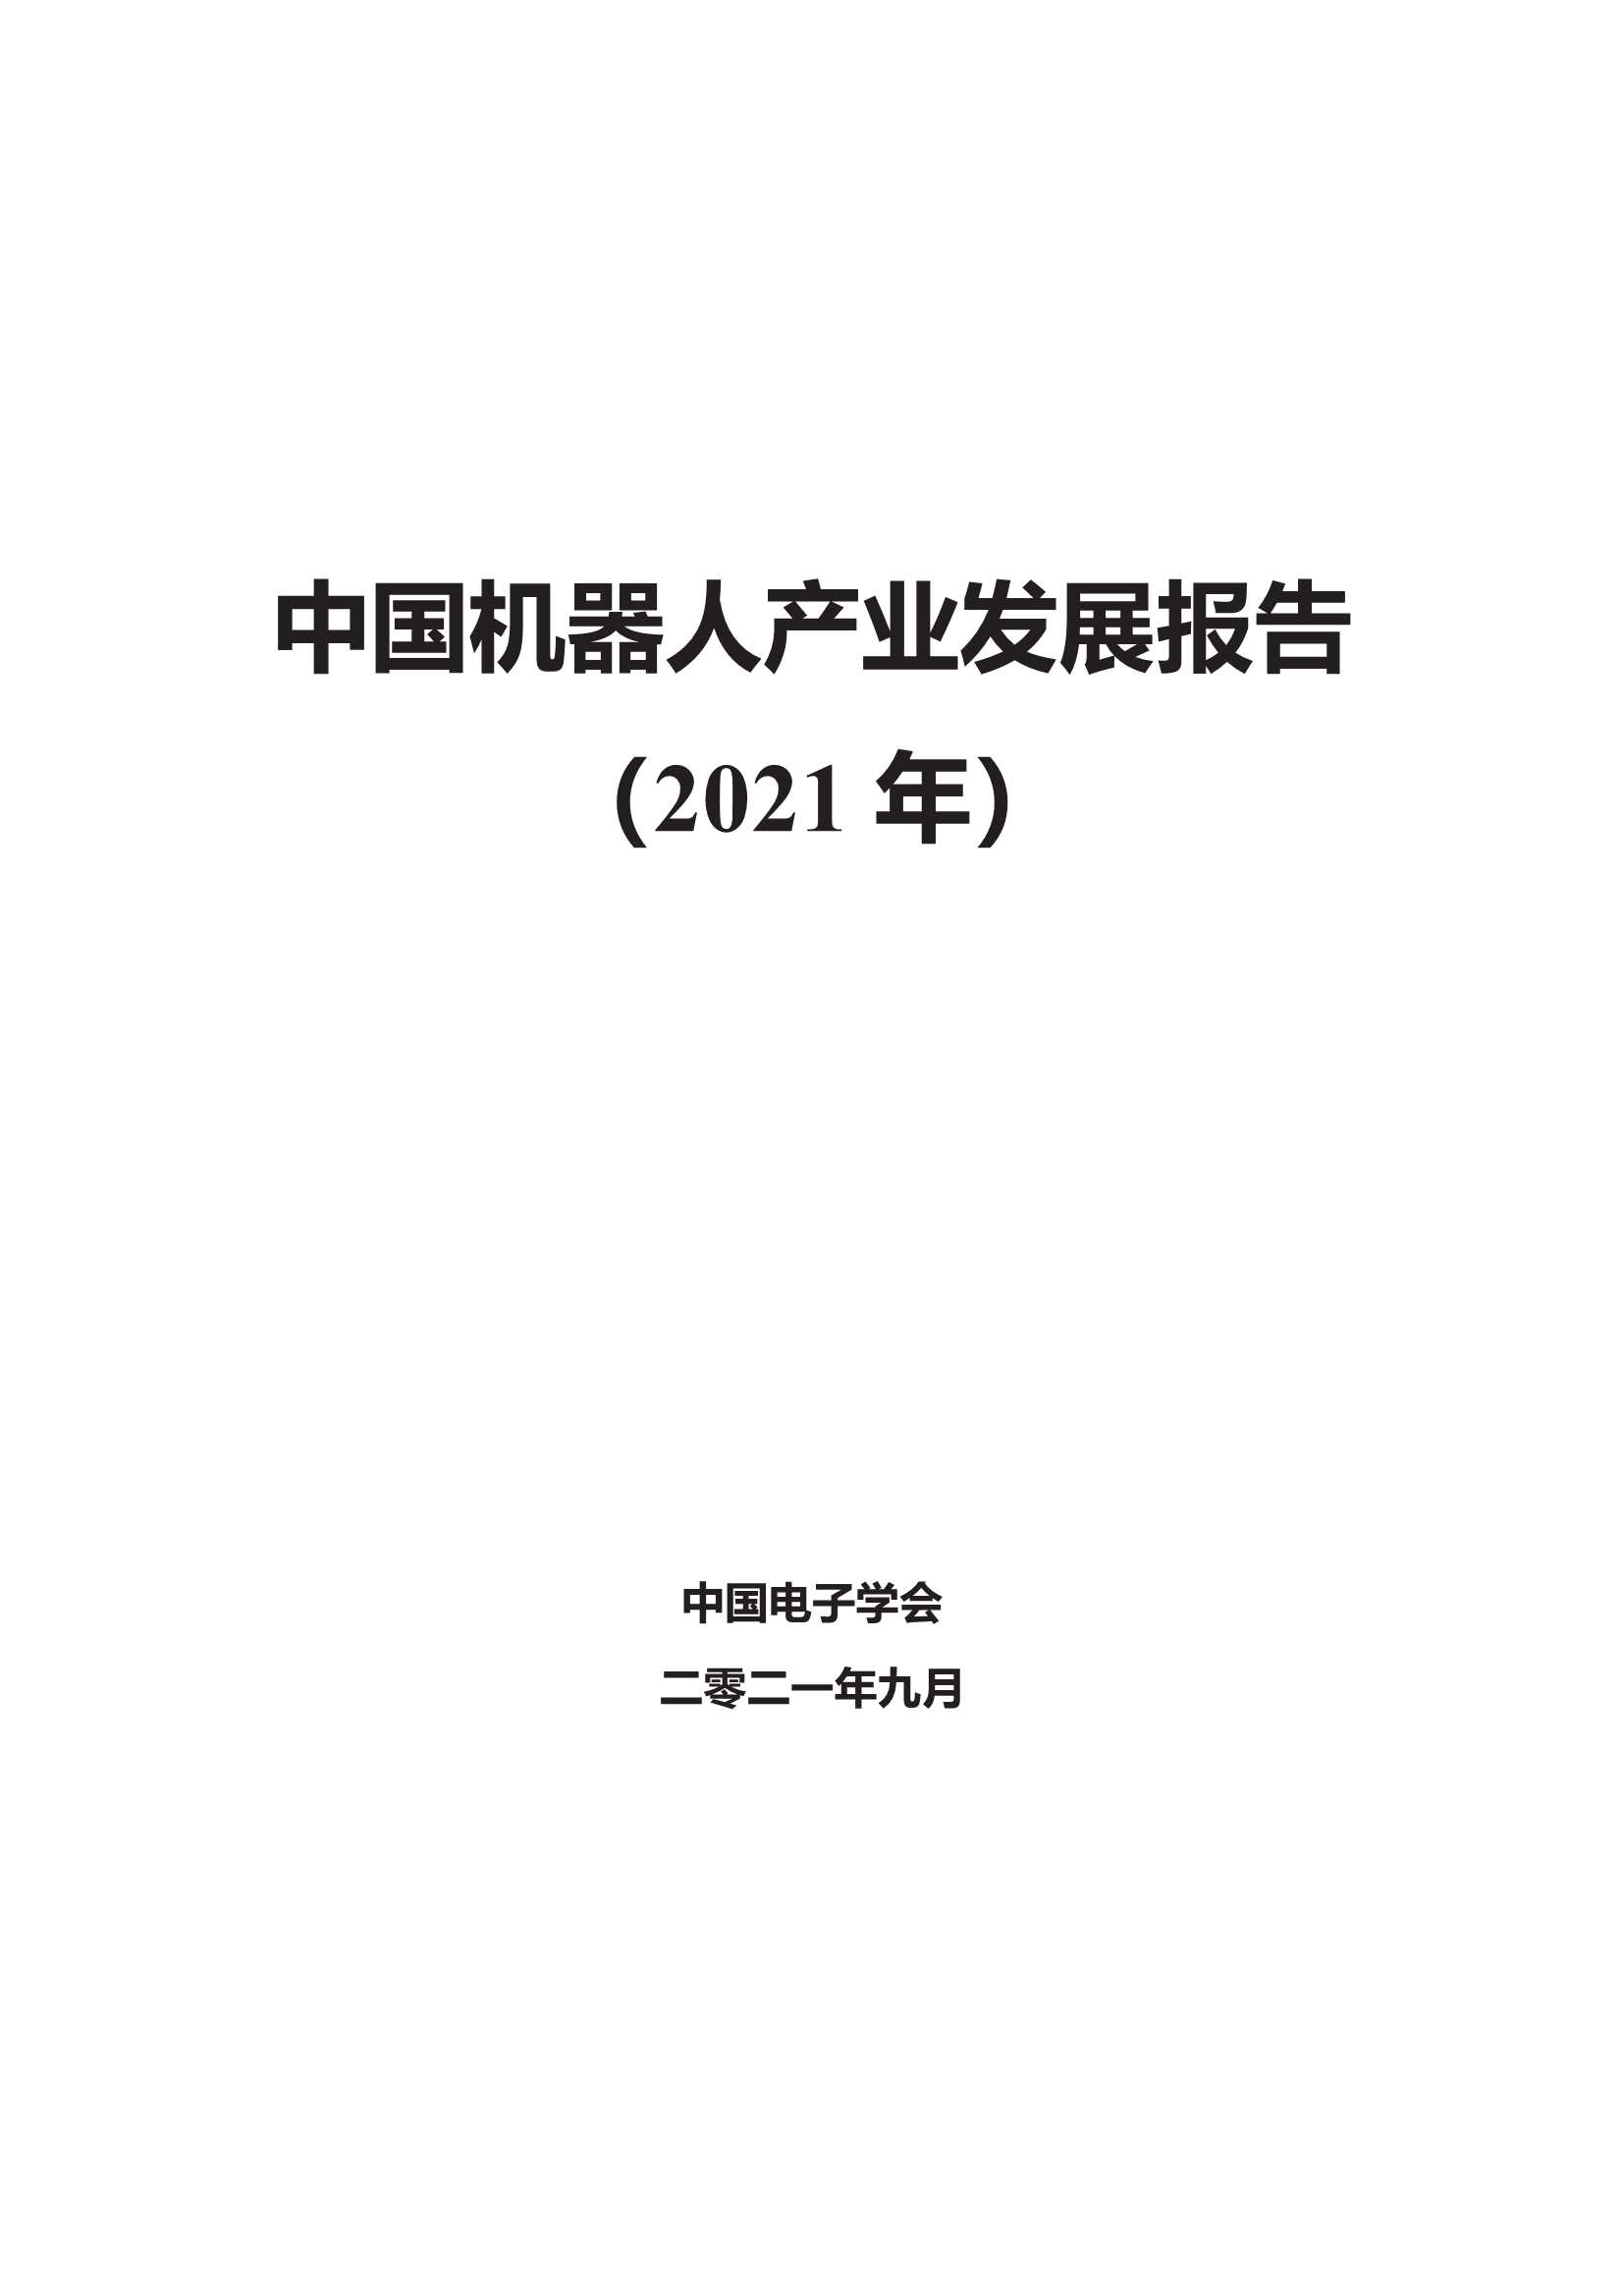 中国电子学会-2021中国机器人产业发展报告-2021.11-70页